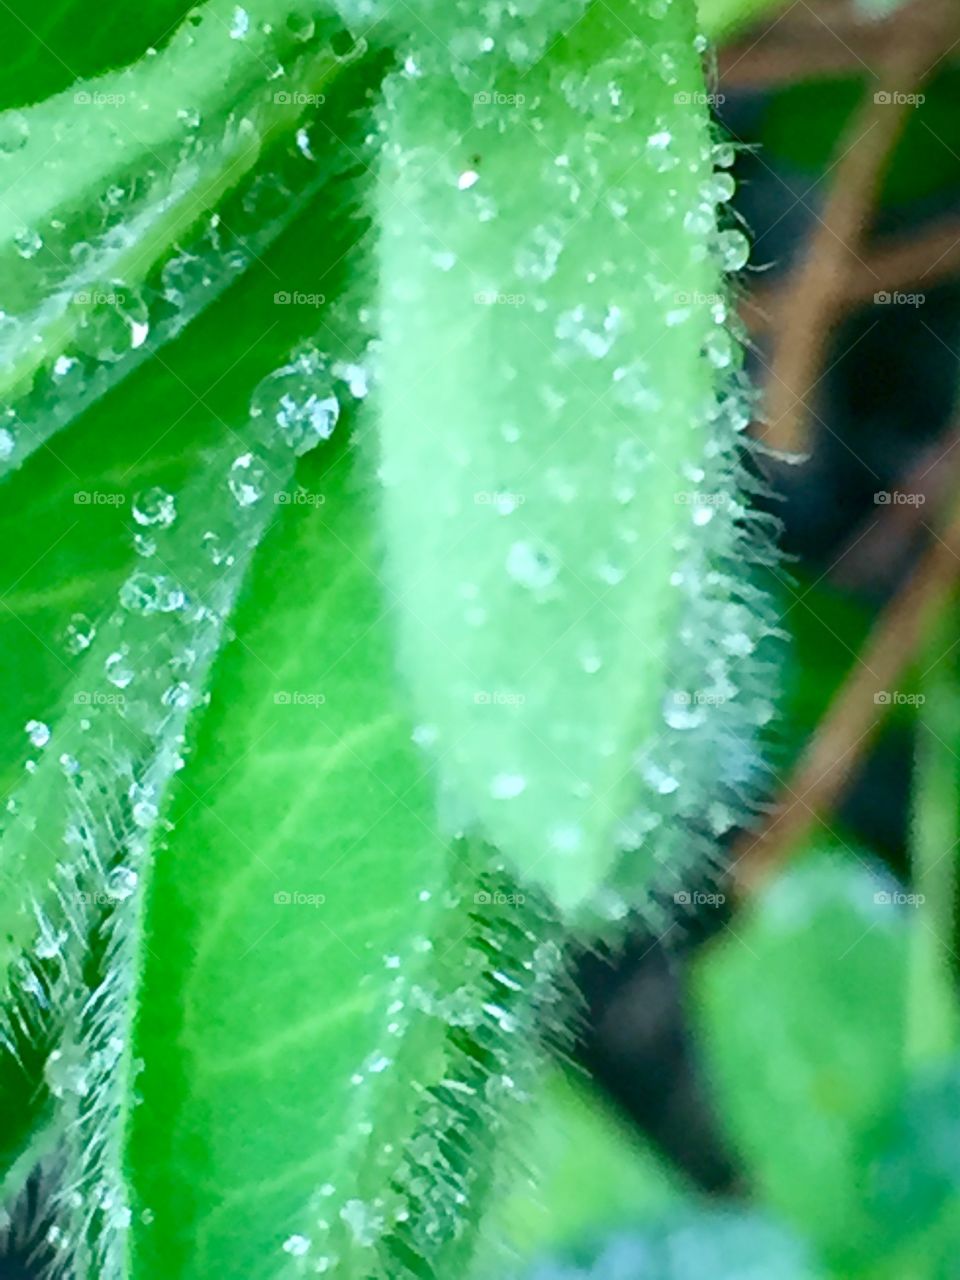 Rain drops on a leaf